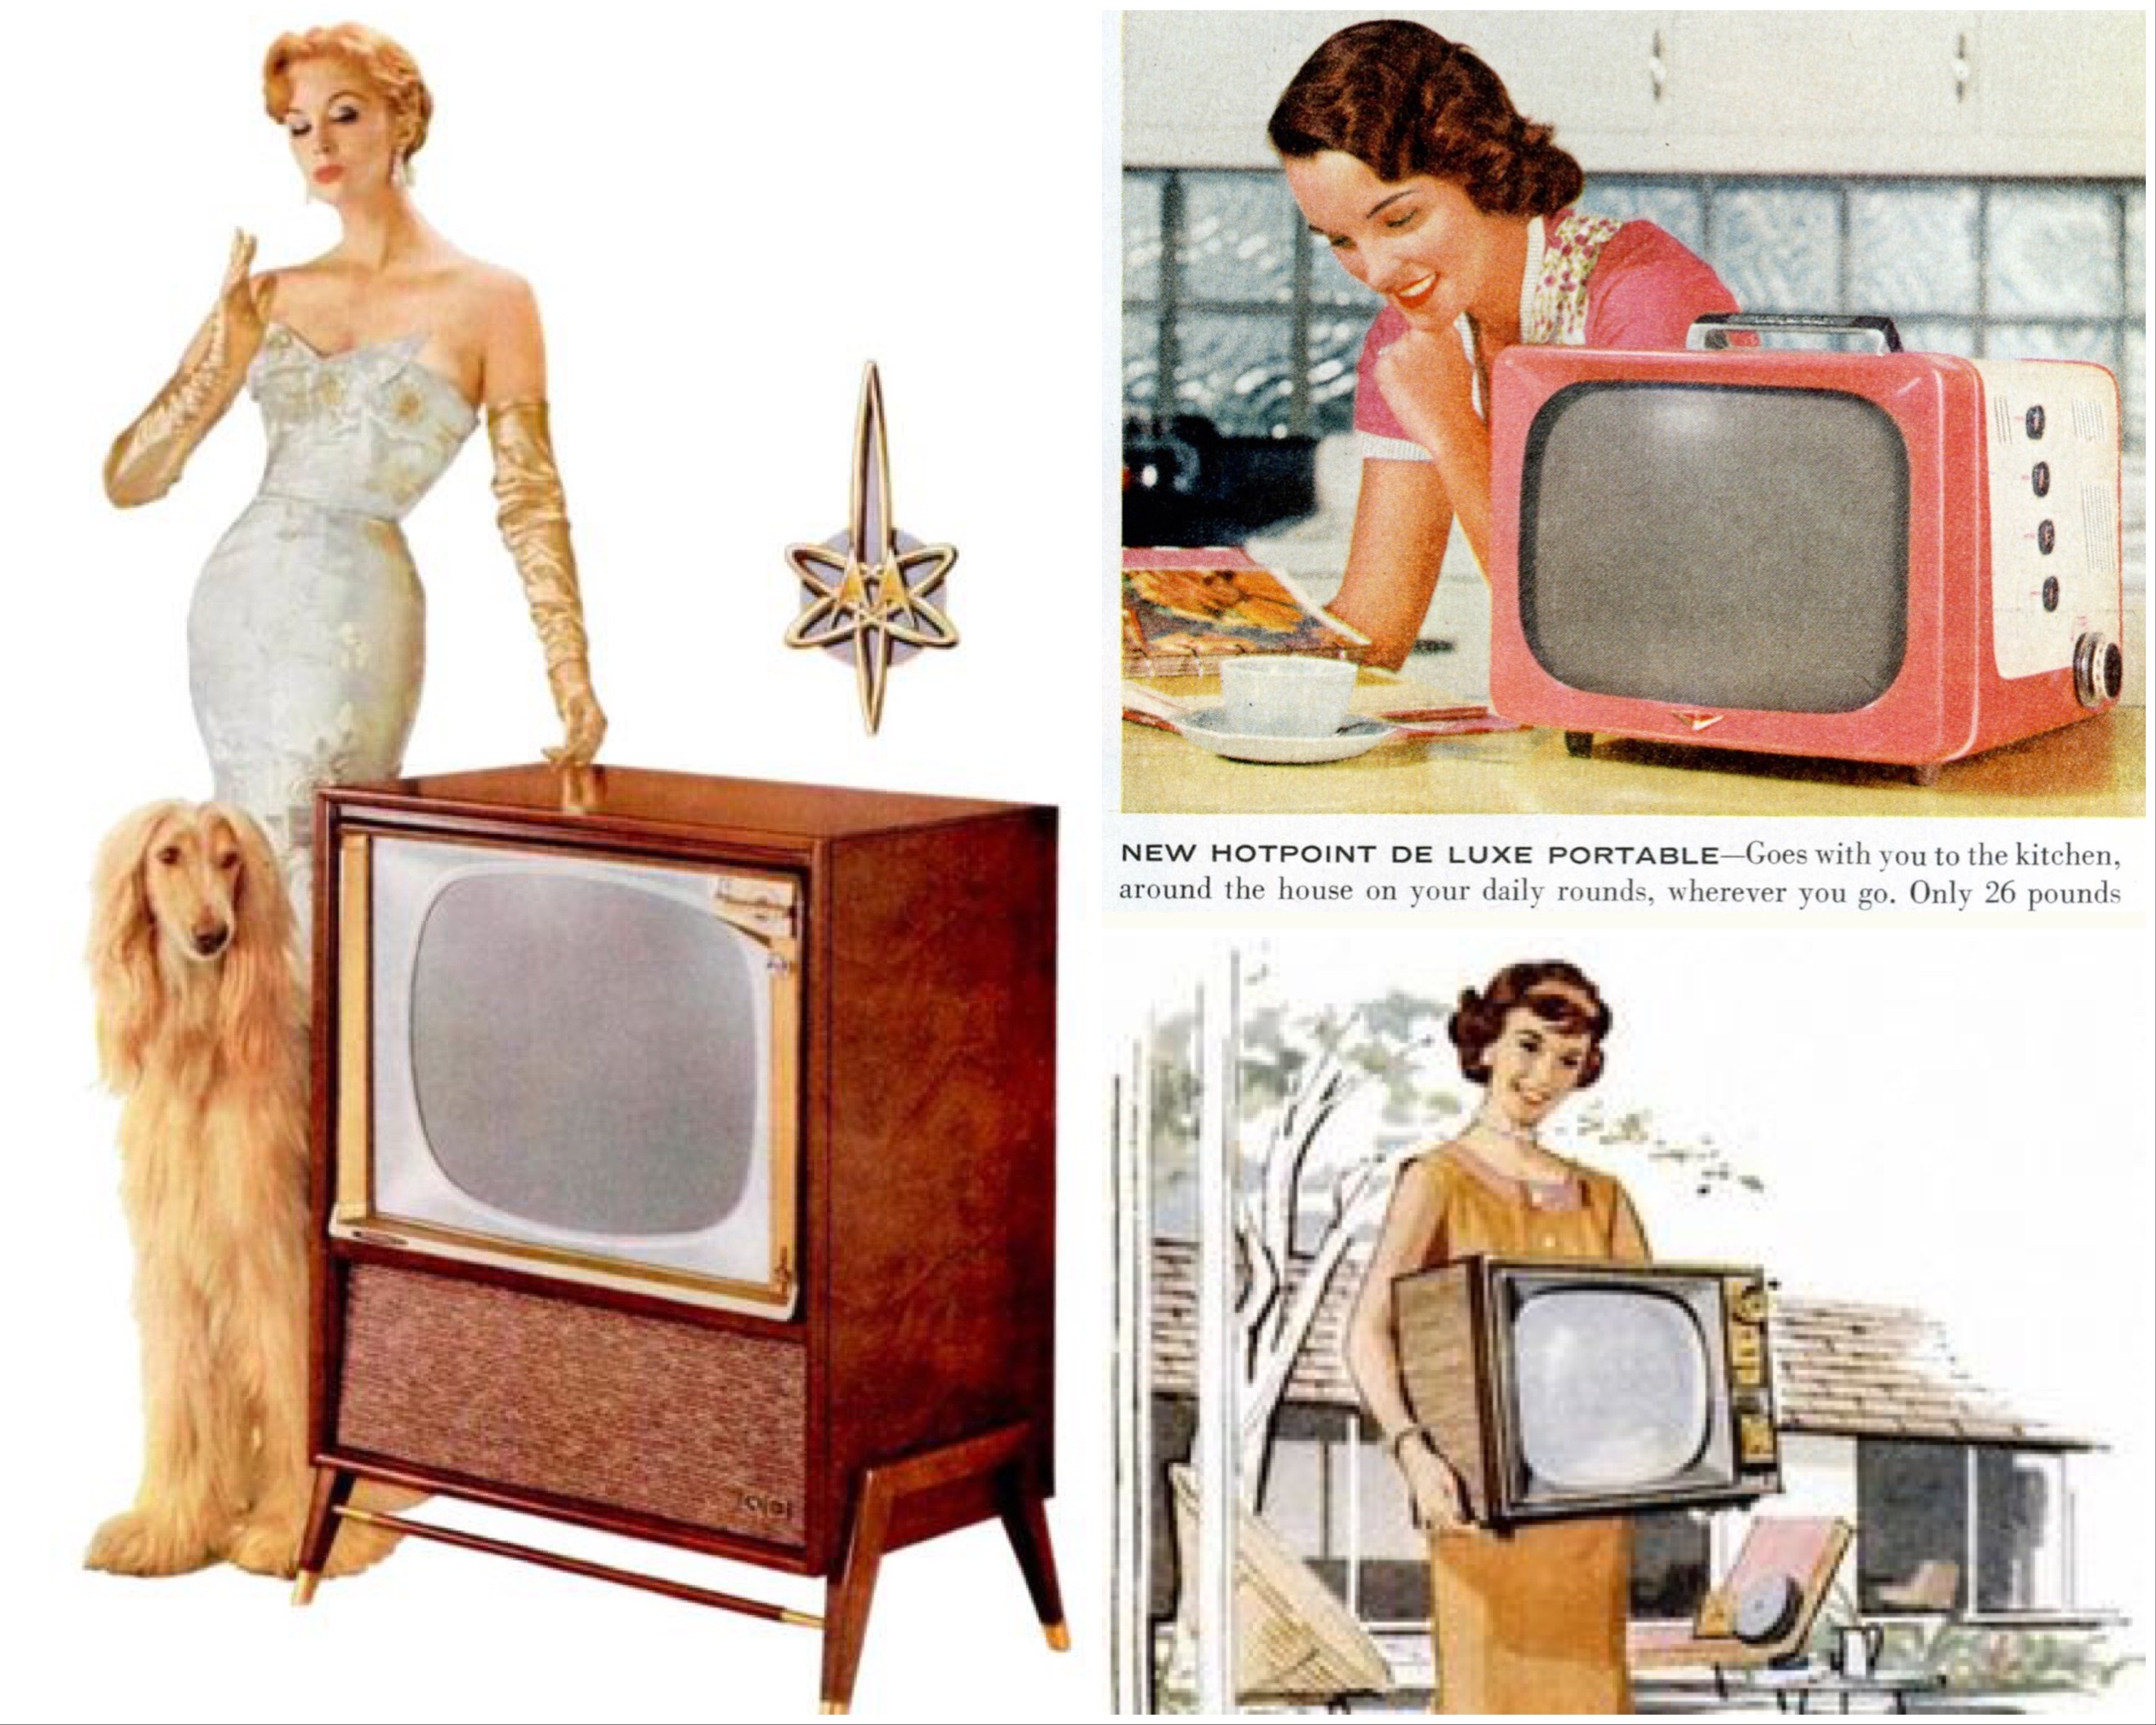 Ahogy az ötvenes évekbeli reklámszakemberek elképzelték a nők és a híradástechnika viszonyát. Az ideális háziasszony elragadó szexbomba, mégis otthonosságot sugároz, ugyanakkor az sem esik nehezére, hogy maga után cipeljen a házban egy 12 kilós tévét. Azok után, hogy egy jóval nagyobb tévét is mosolyogva hazavitt ölben, ez semmiség.